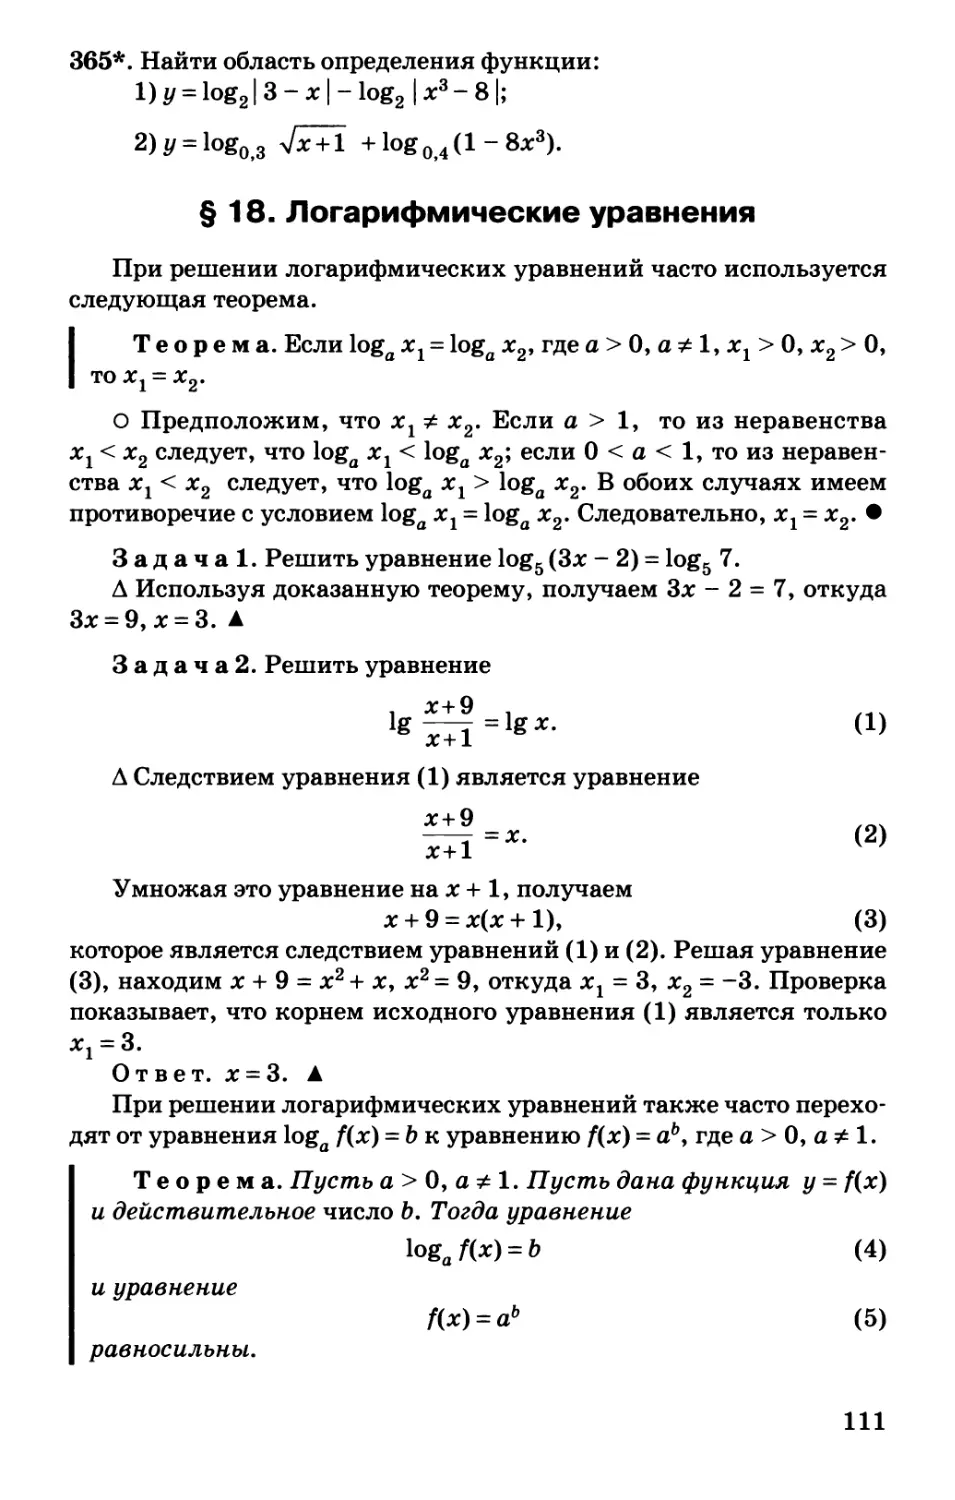 § 18. Логарифмические уравнения